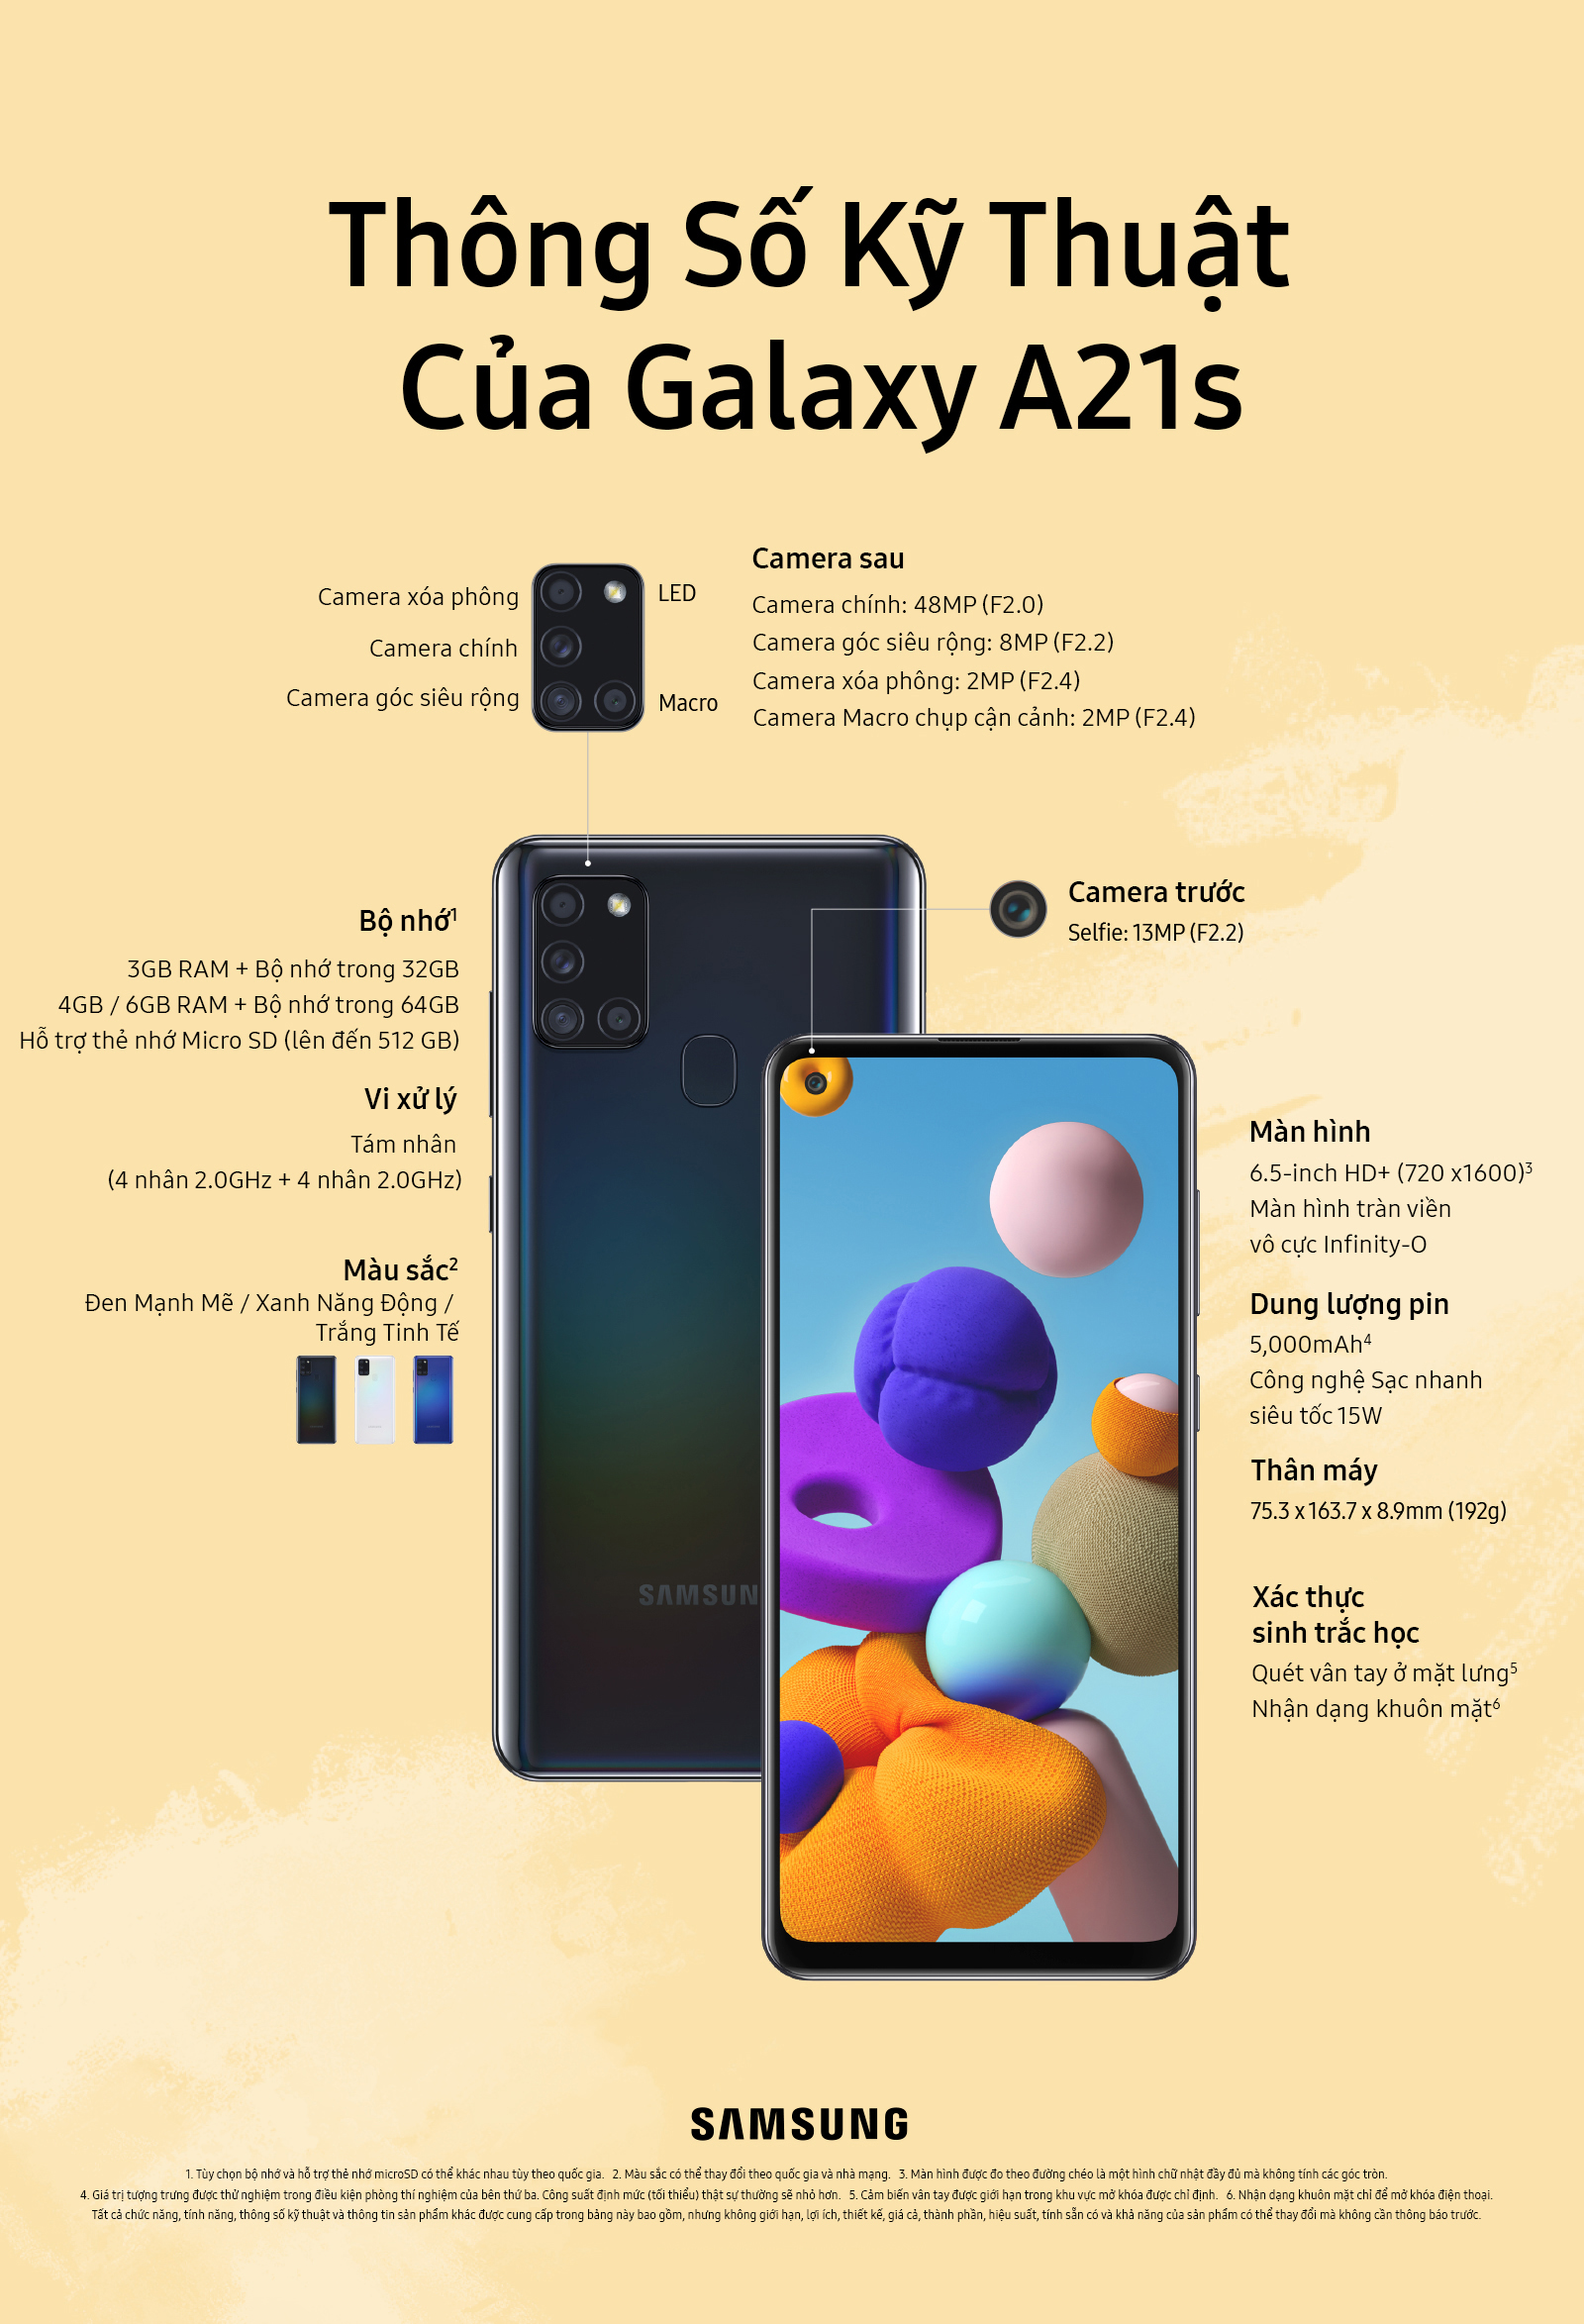 Galaxy A21s: Một trong những chiếc điện thoại mới nhất của Samsung với thiết kế đẹp mắt và tính năng ưu việt. Hãy xem hình ảnh của Galaxy A21s để cảm nhận được điều này.